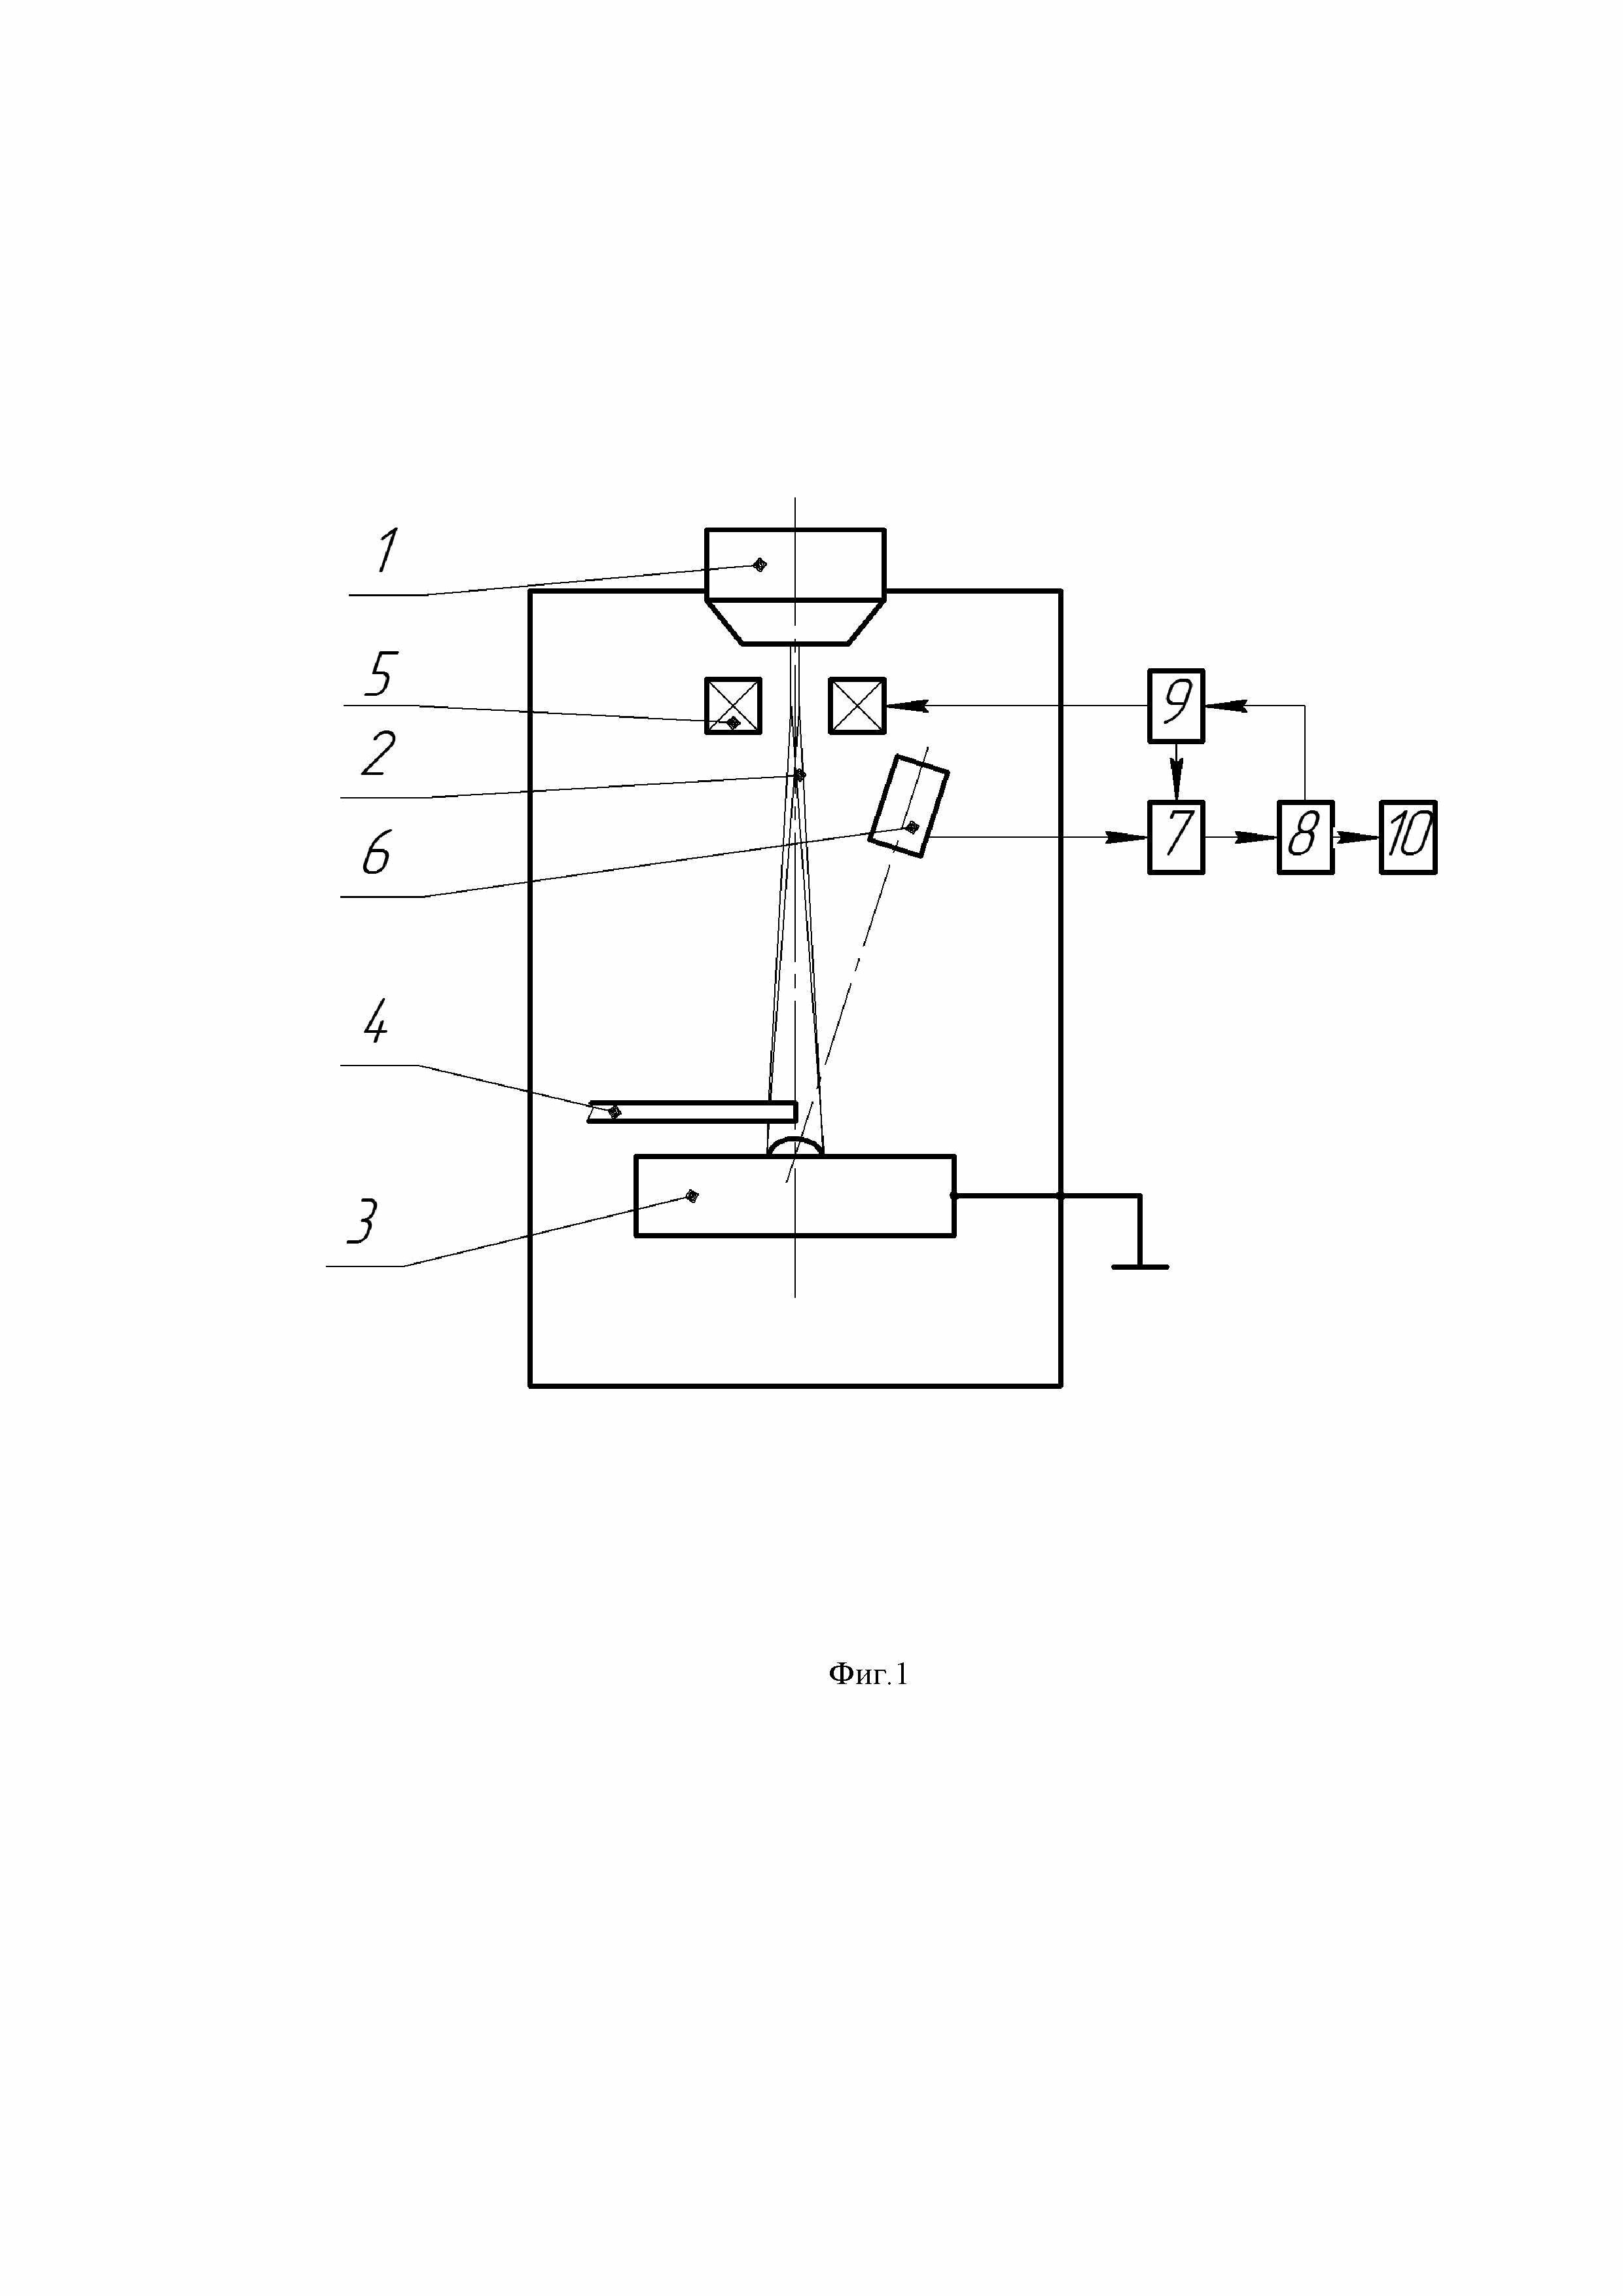 Способ электронно-лучевой наплавки с контролем положения присадочной проволоки относительно электронного луча (варианты)